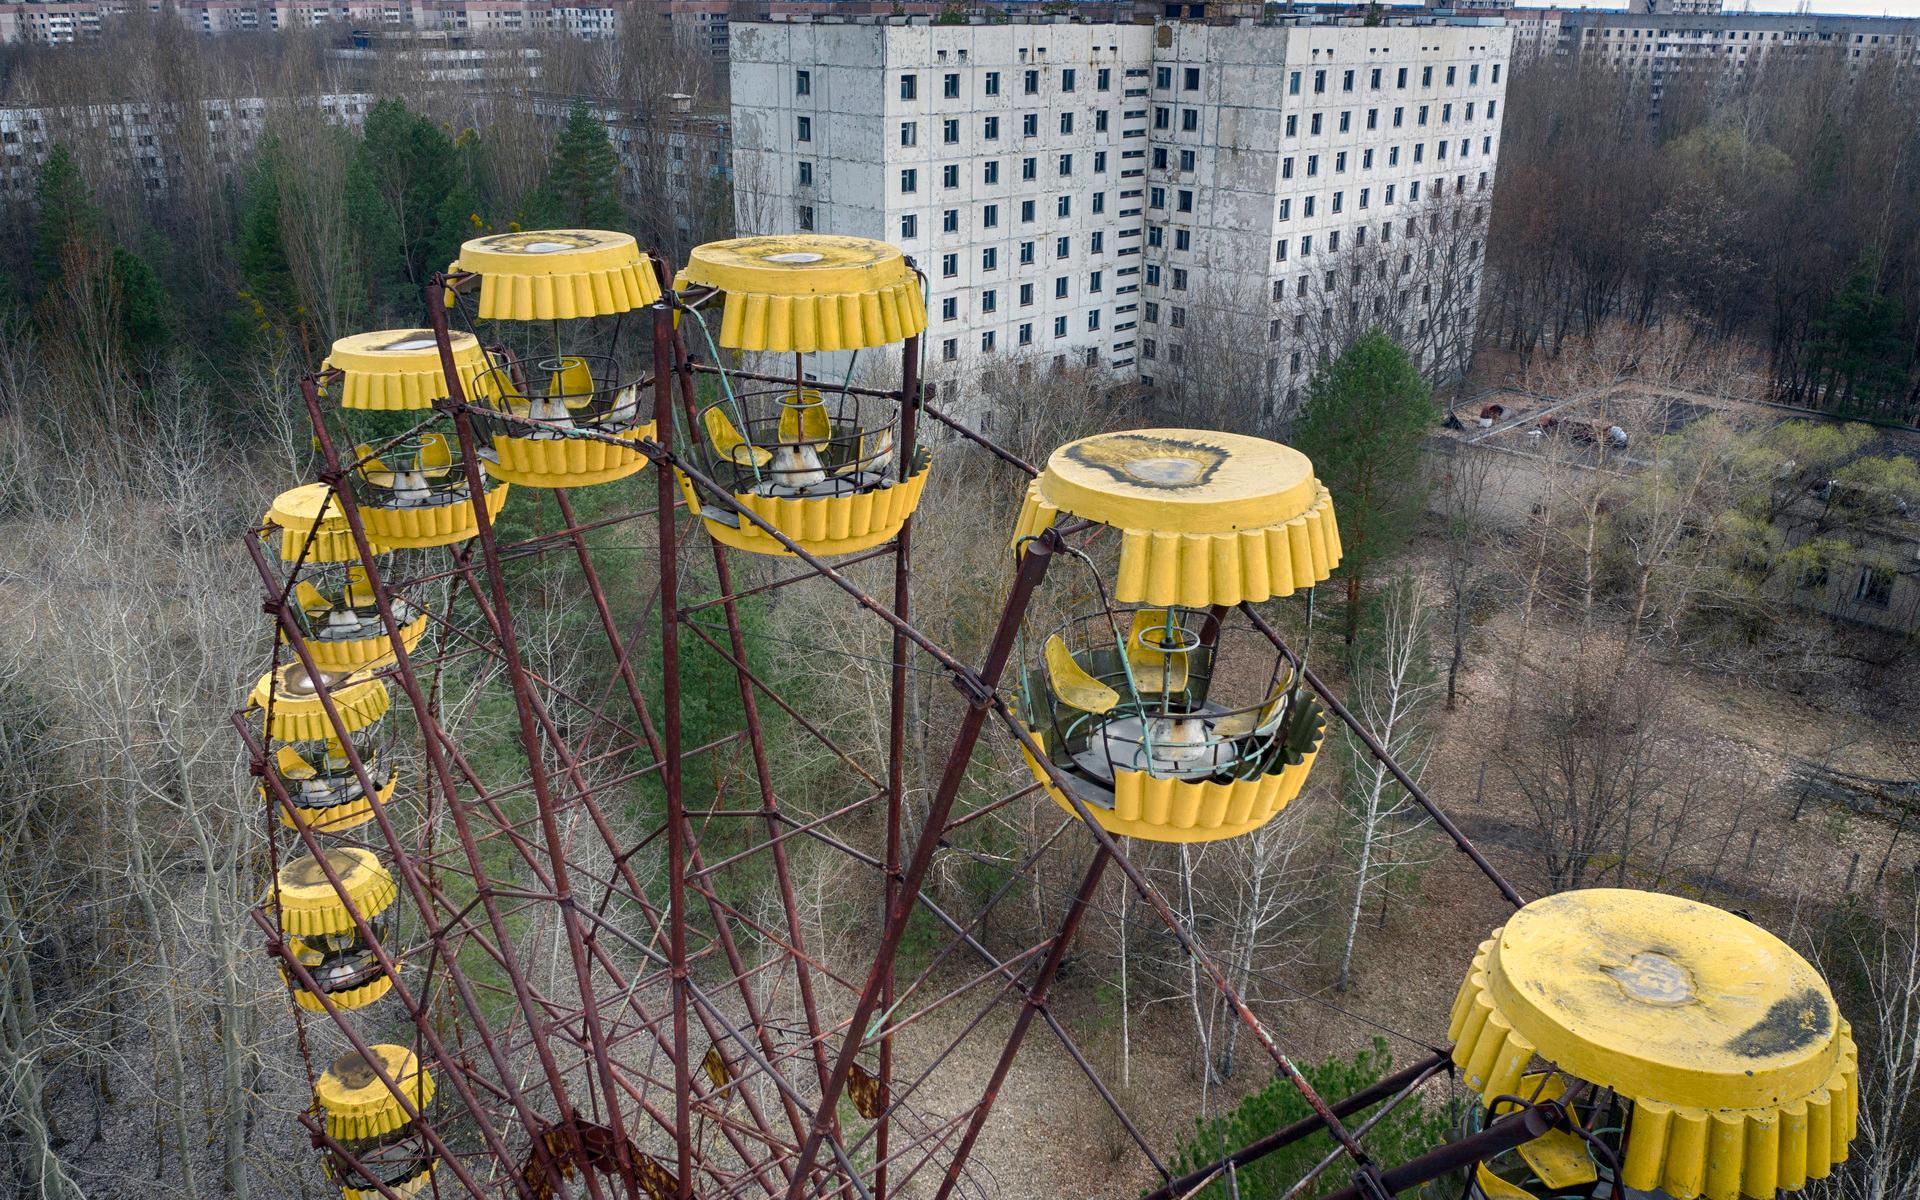 1986 upptäcktes härdsmältan genom att man registrerade radioaktivitet på en anställds skor. Nu är området kring Tjernobyl förbruden zon.